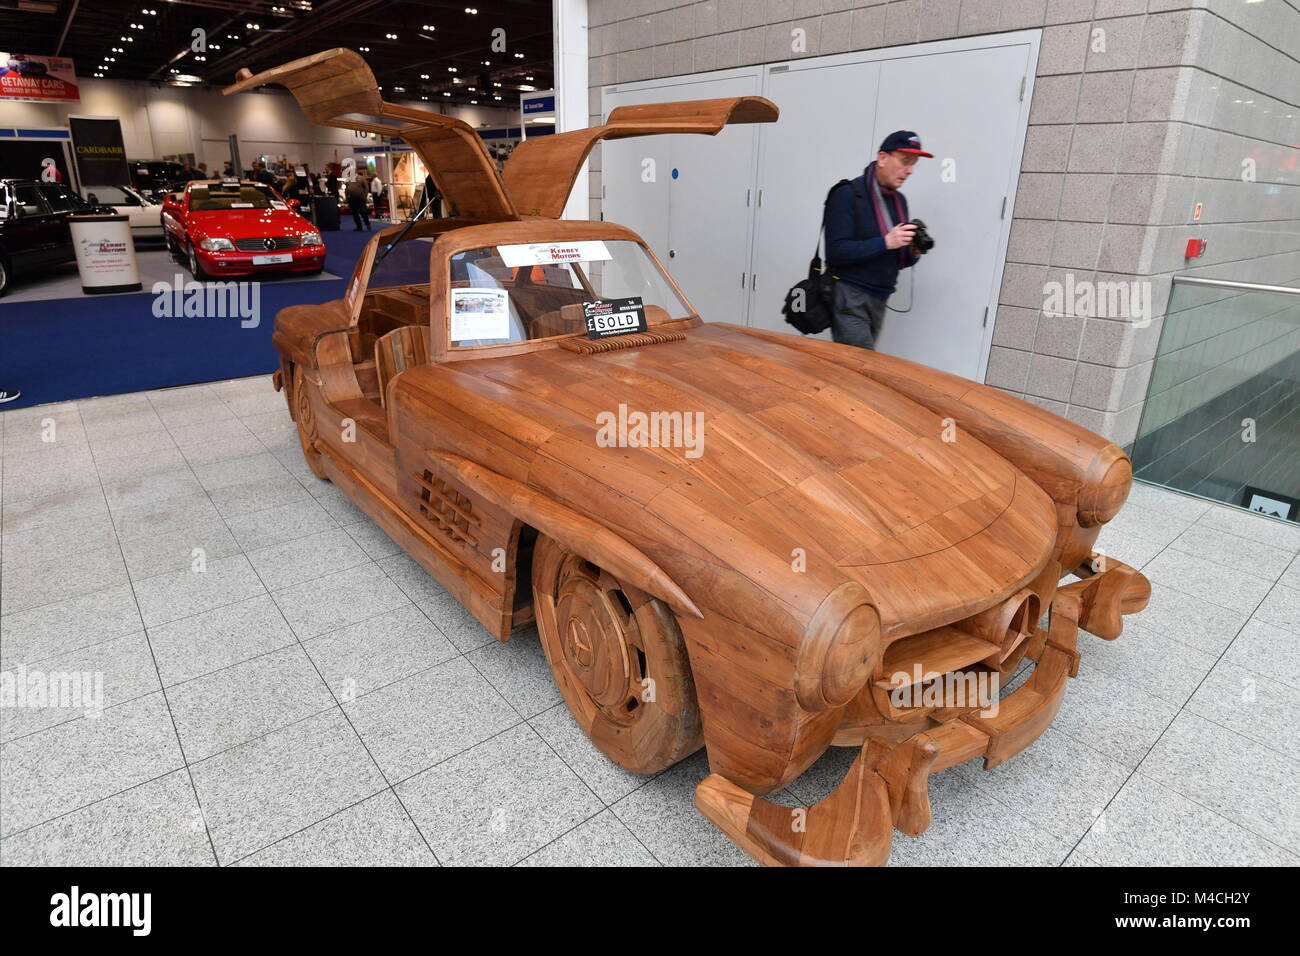 Une réplique en bois de l'échelle complète Mercedes 300 SL à l'aperçu pour le London Classic Car Show, à exceller dans l'Est de Londres. Banque D'Images